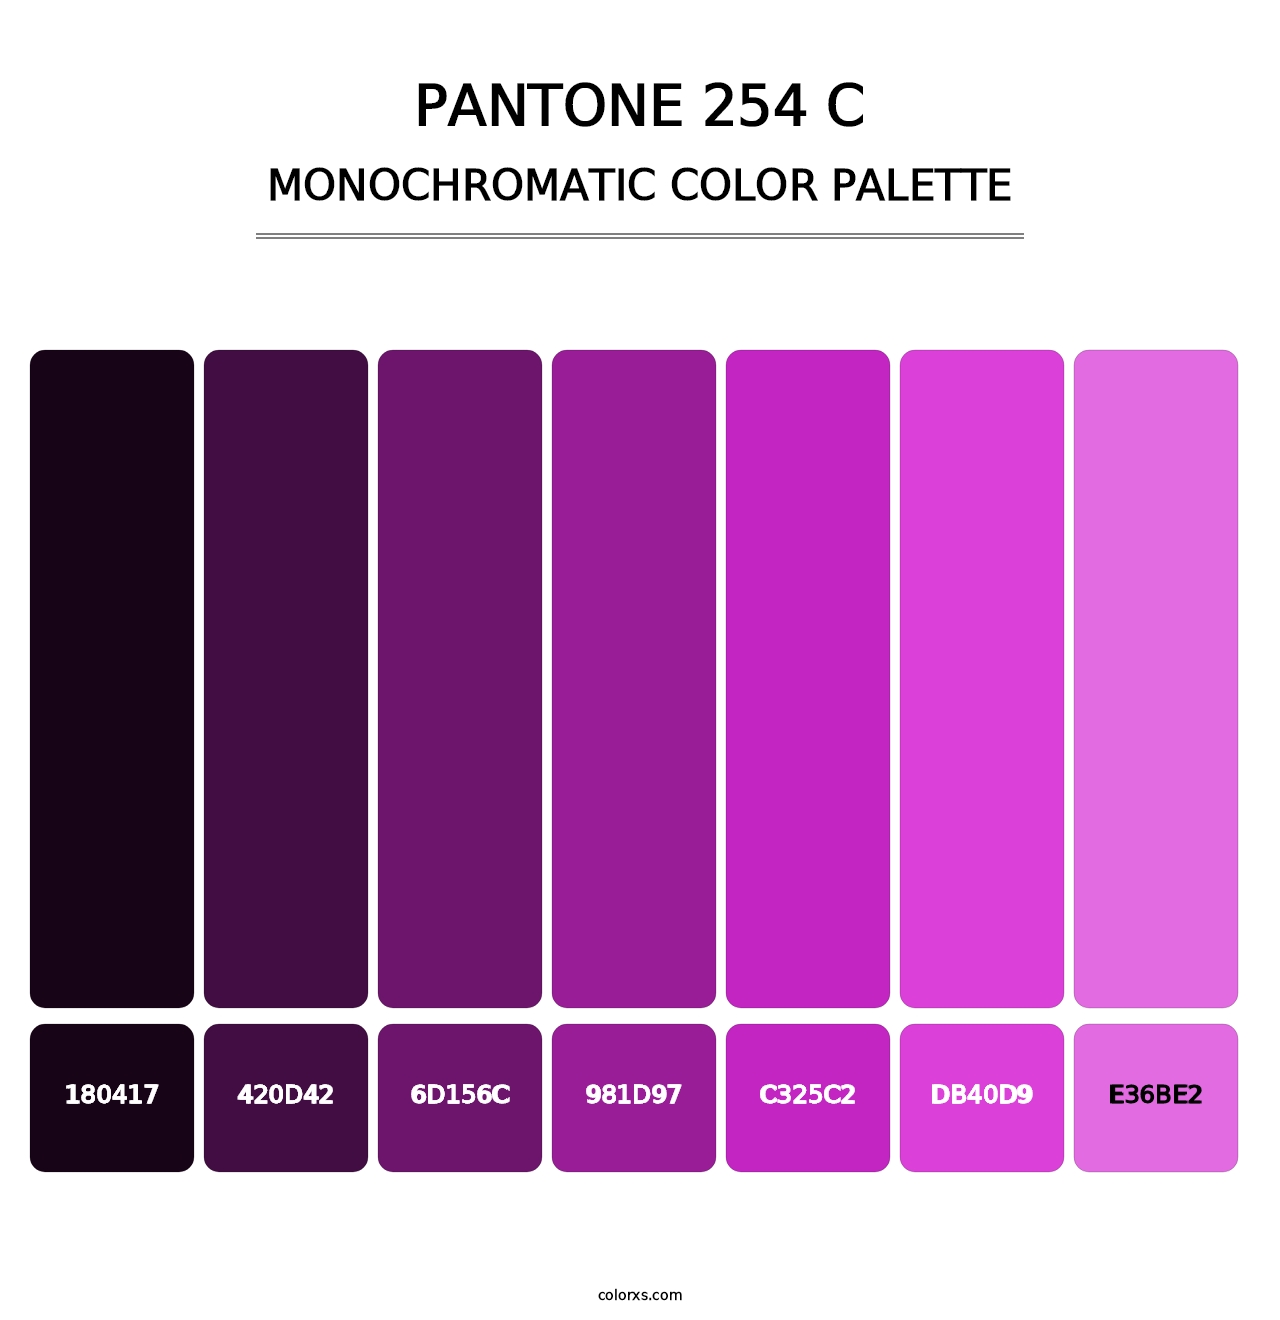 PANTONE 254 C - Monochromatic Color Palette